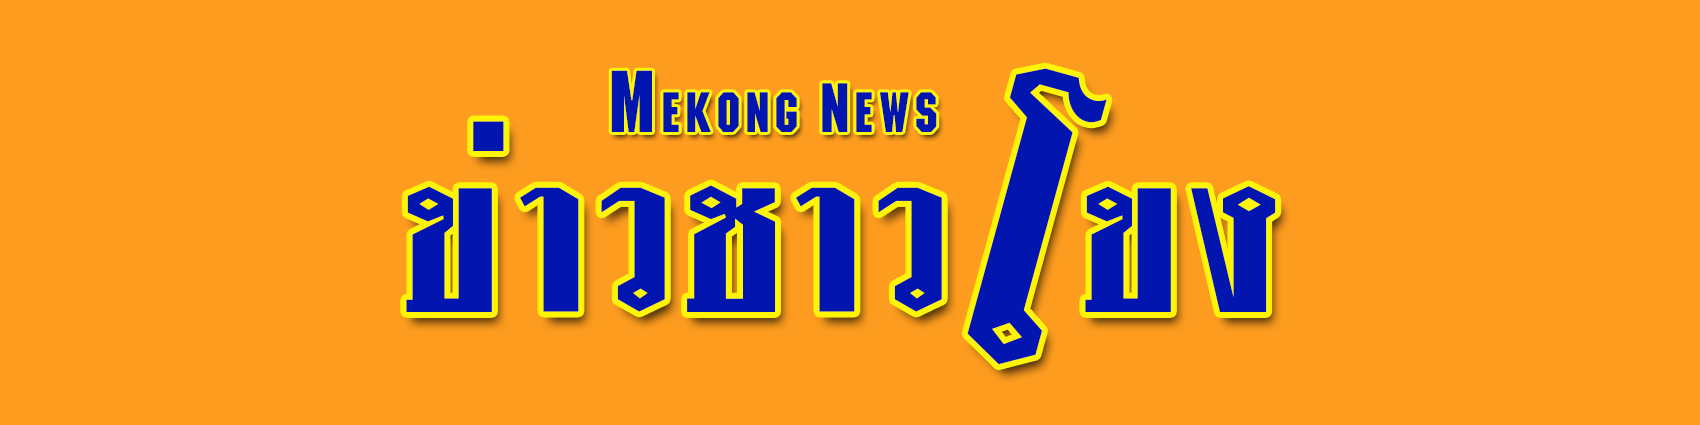 vdo logo mk news